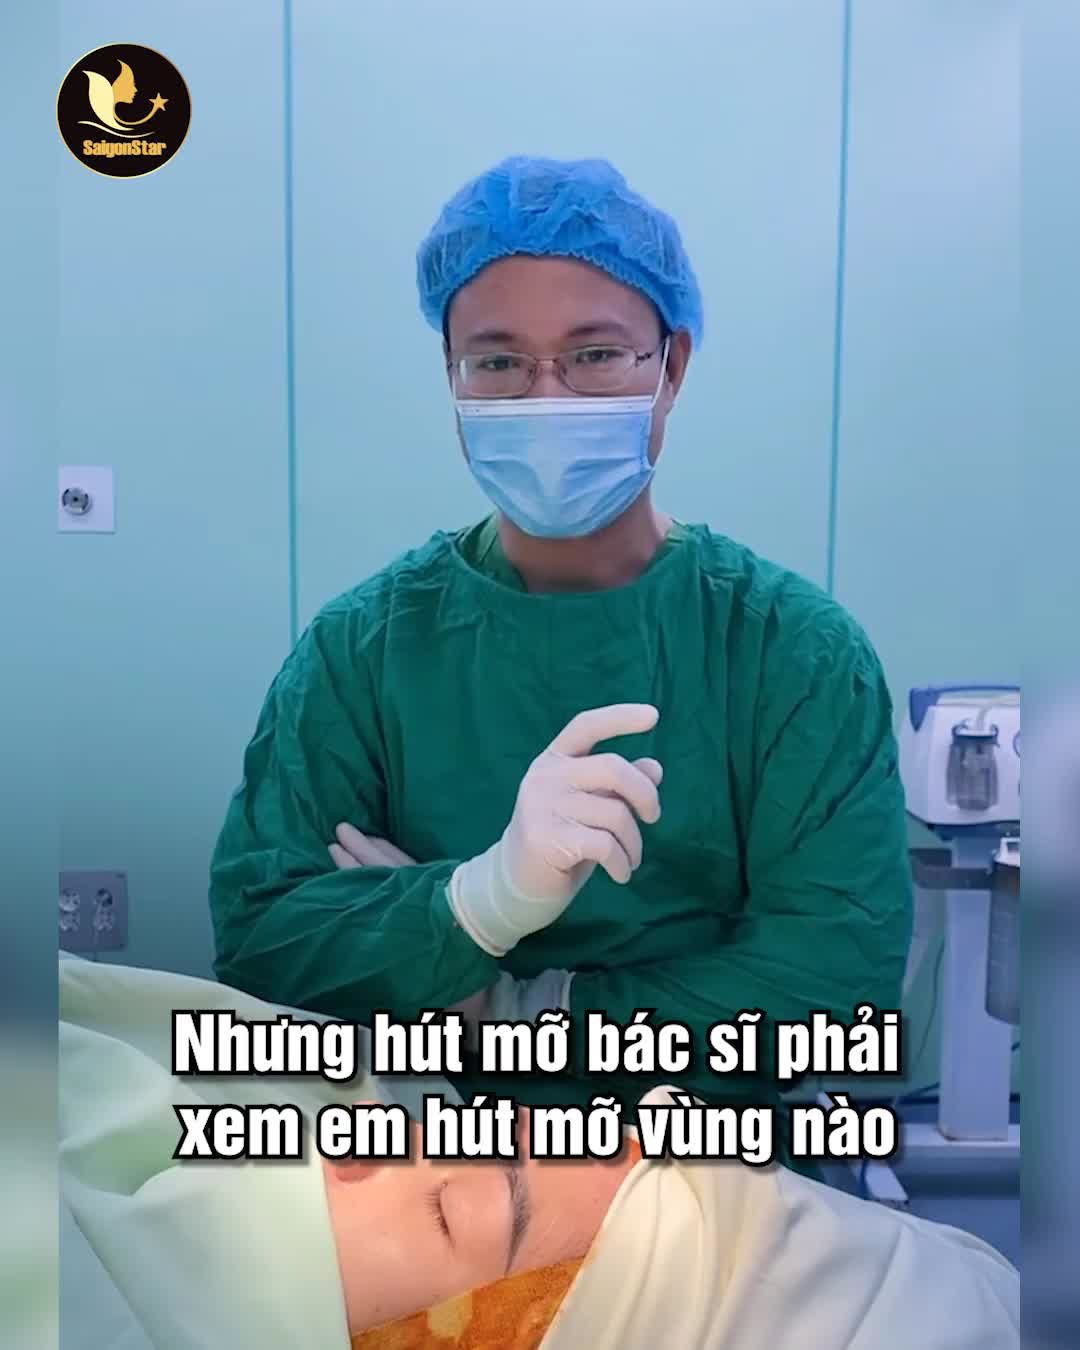 Hỏi “Em về Việt Nam được 2 tuần thì có thể vừa hút mỡ, nâng ngực, nâng mũi được không bác sĩ”